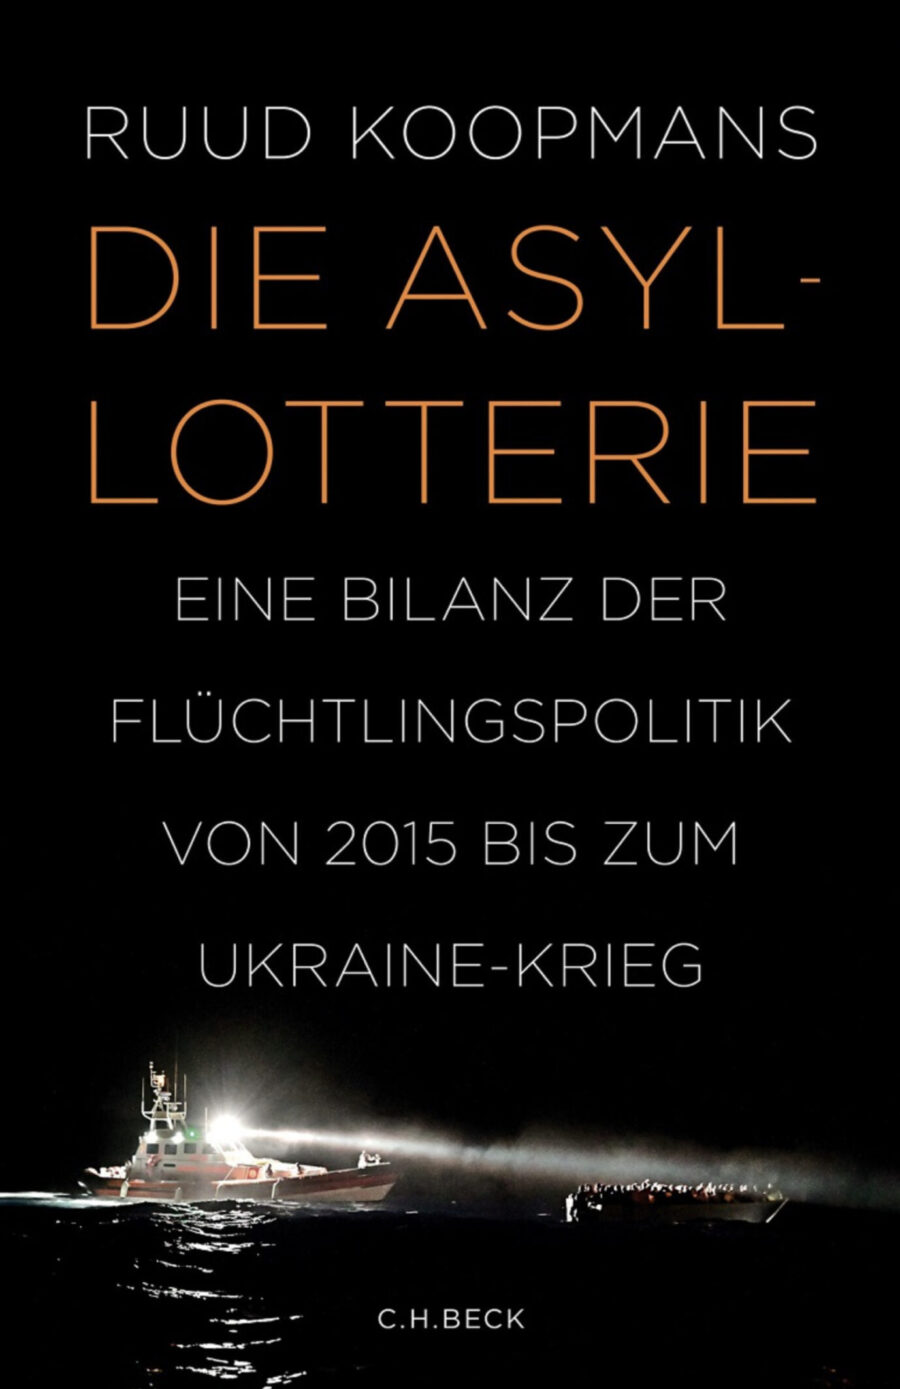 Das Bild zeigt das Cover von Ruud Koopmans' neuem Buch „Die Asyl Lotterie“. Der Autor kritisiert die aktuelle europäische Migrationspolitik scharf.